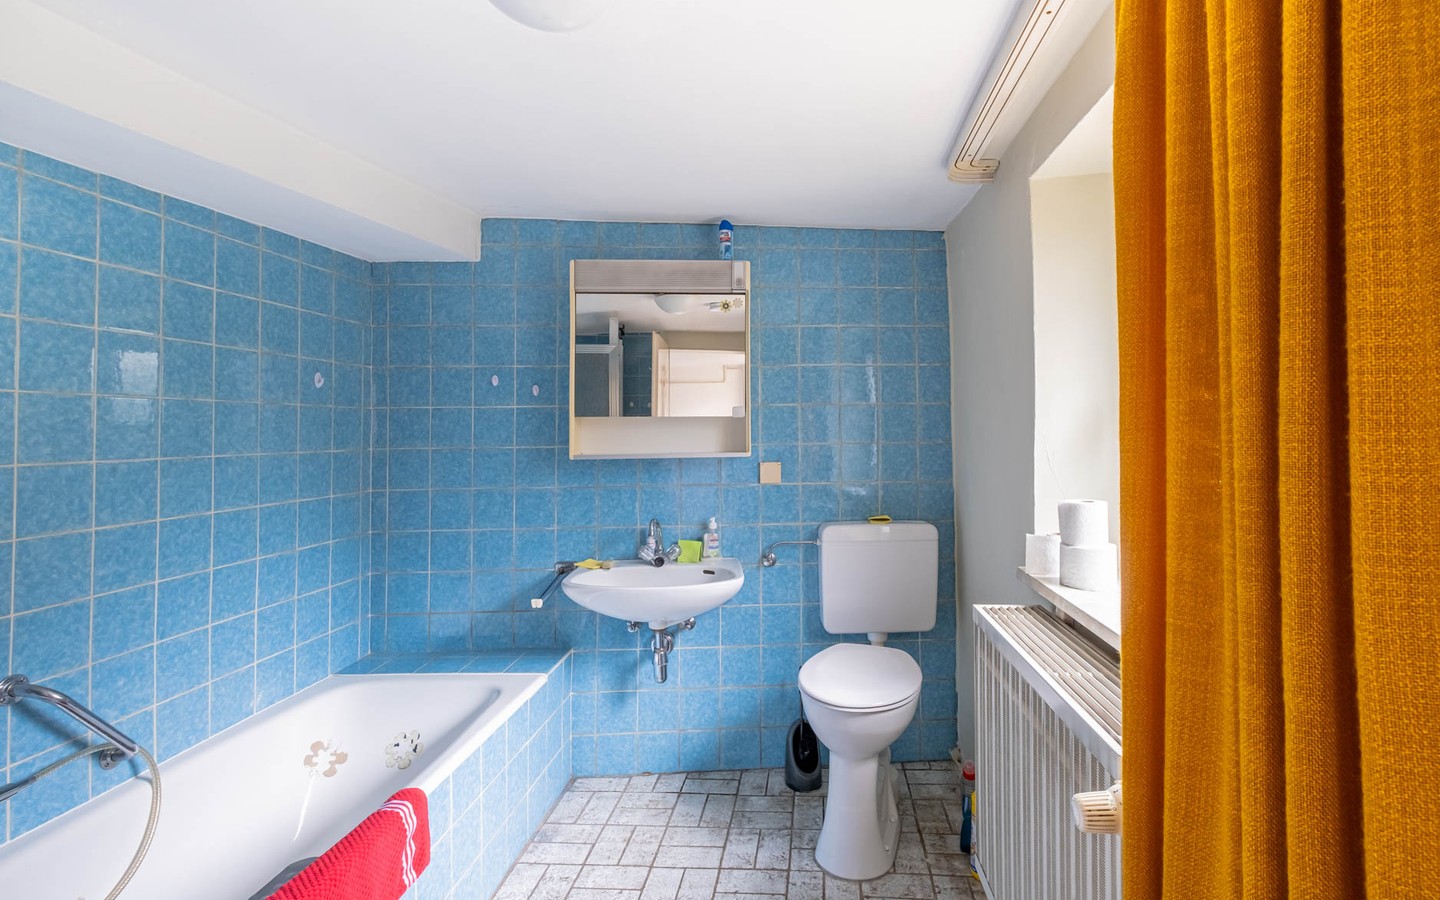 Badezimmer - Kreatives Erwachen: Ein 1820 erbautes Haus erfindet sich
neu